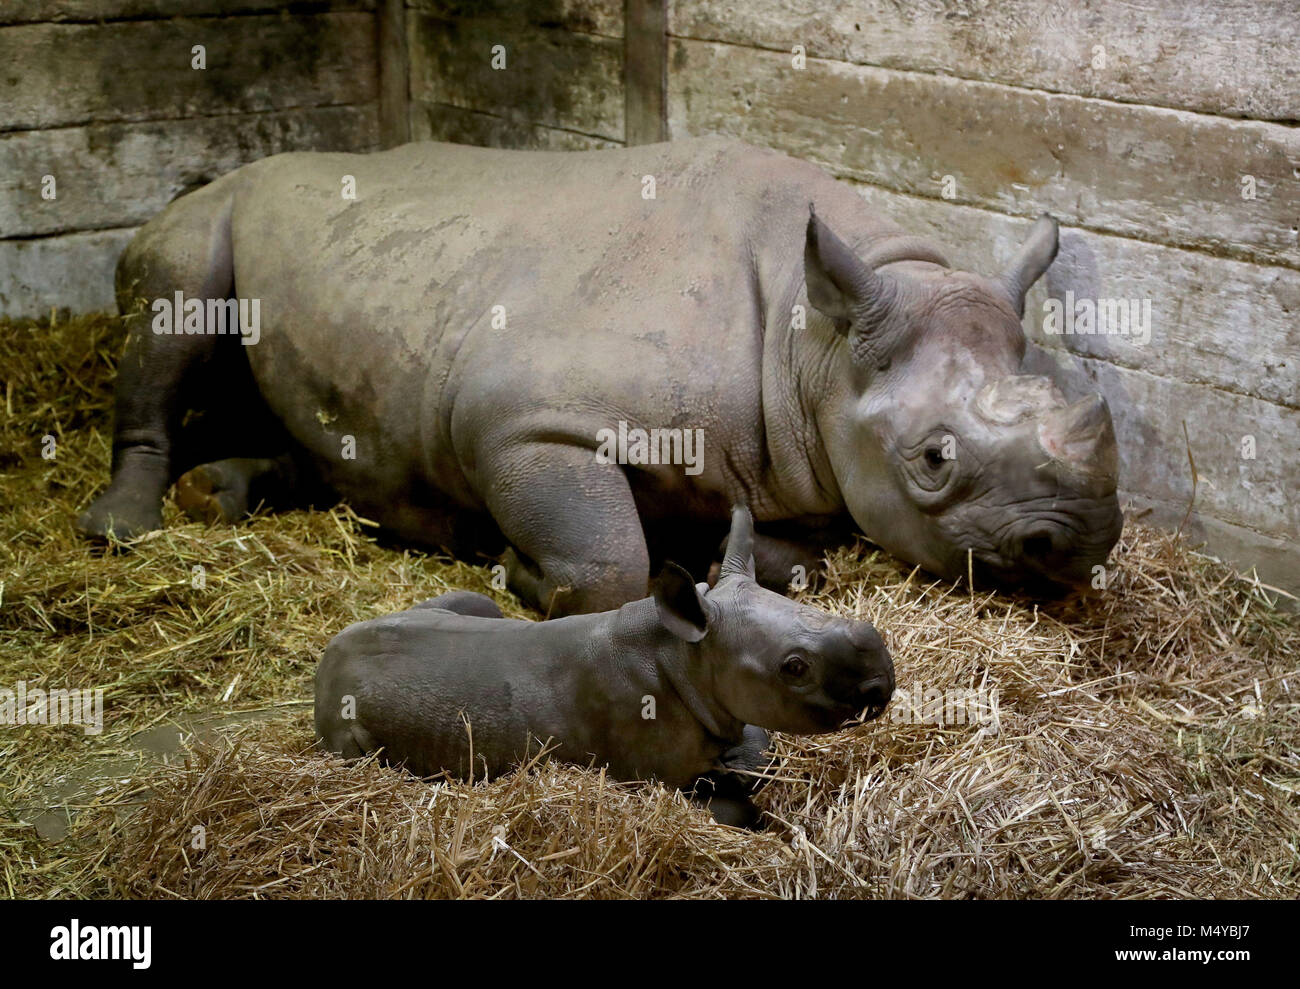 Сколько носорогов родилось в 2002 году